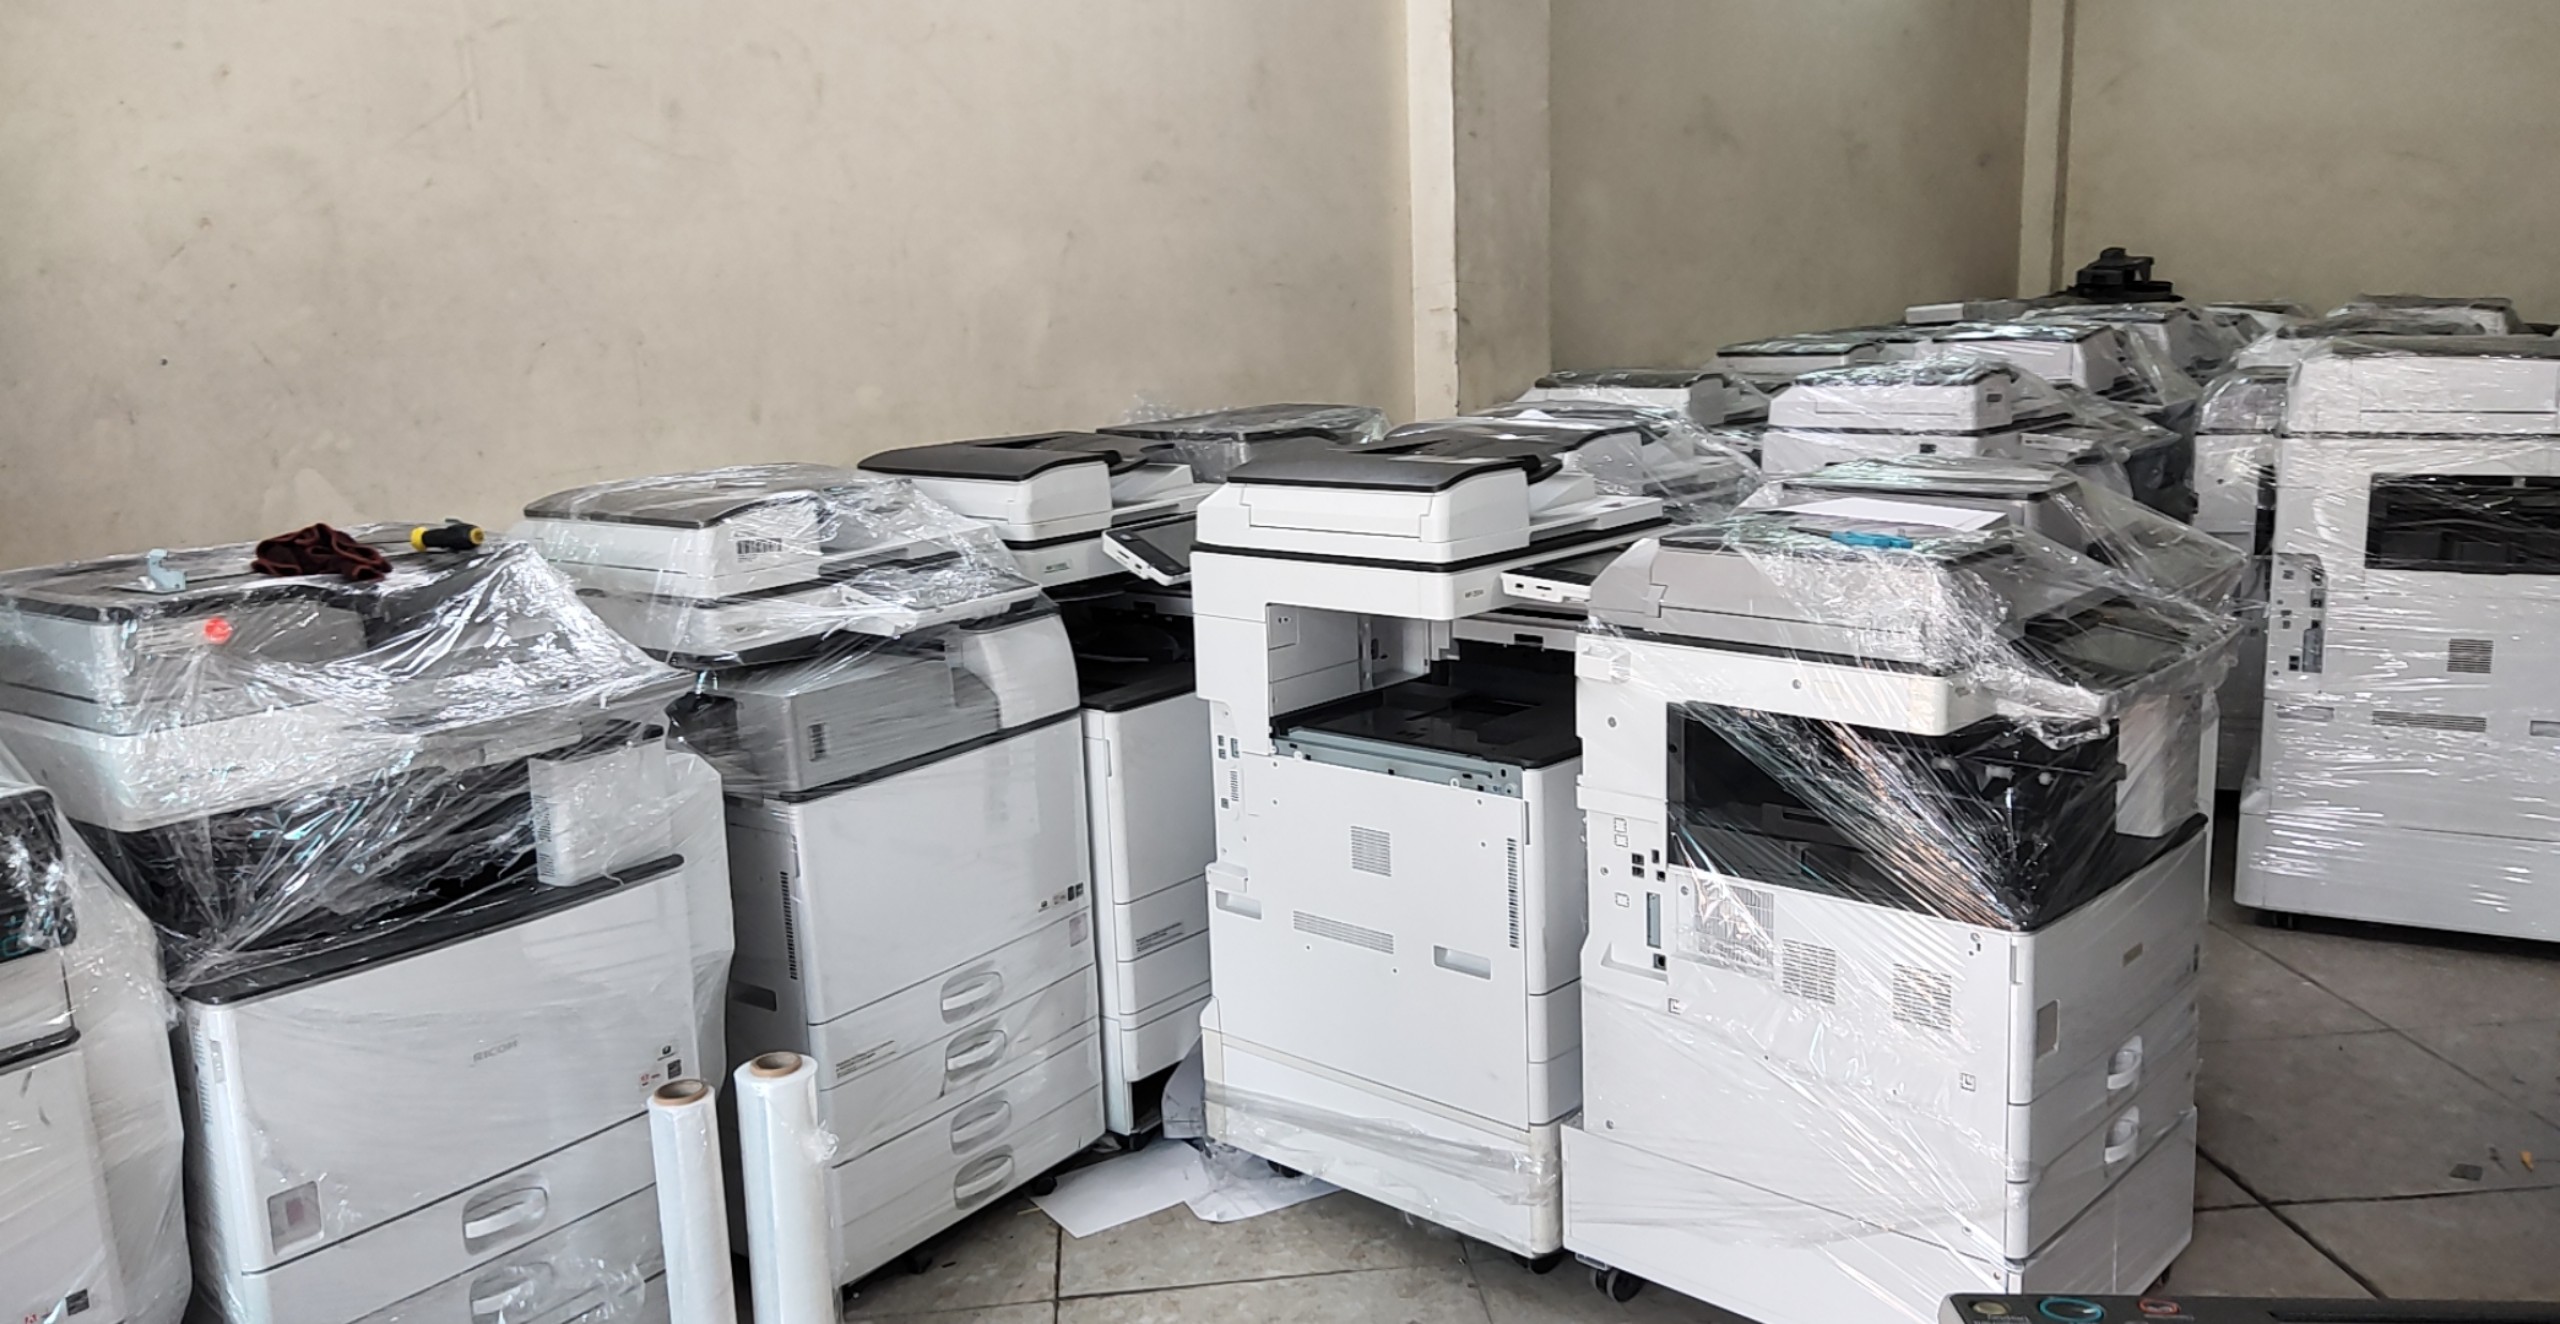 Bán và cho thuê máy photocopy đa chức năng đời mới tại Bắc Ninh